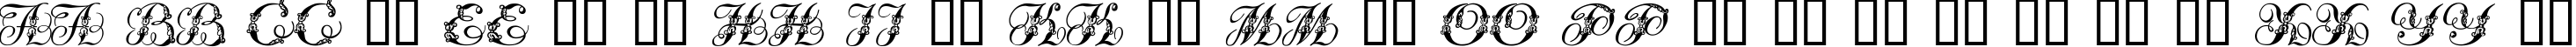 Пример написания английского алфавита шрифтом Tchekhonin2